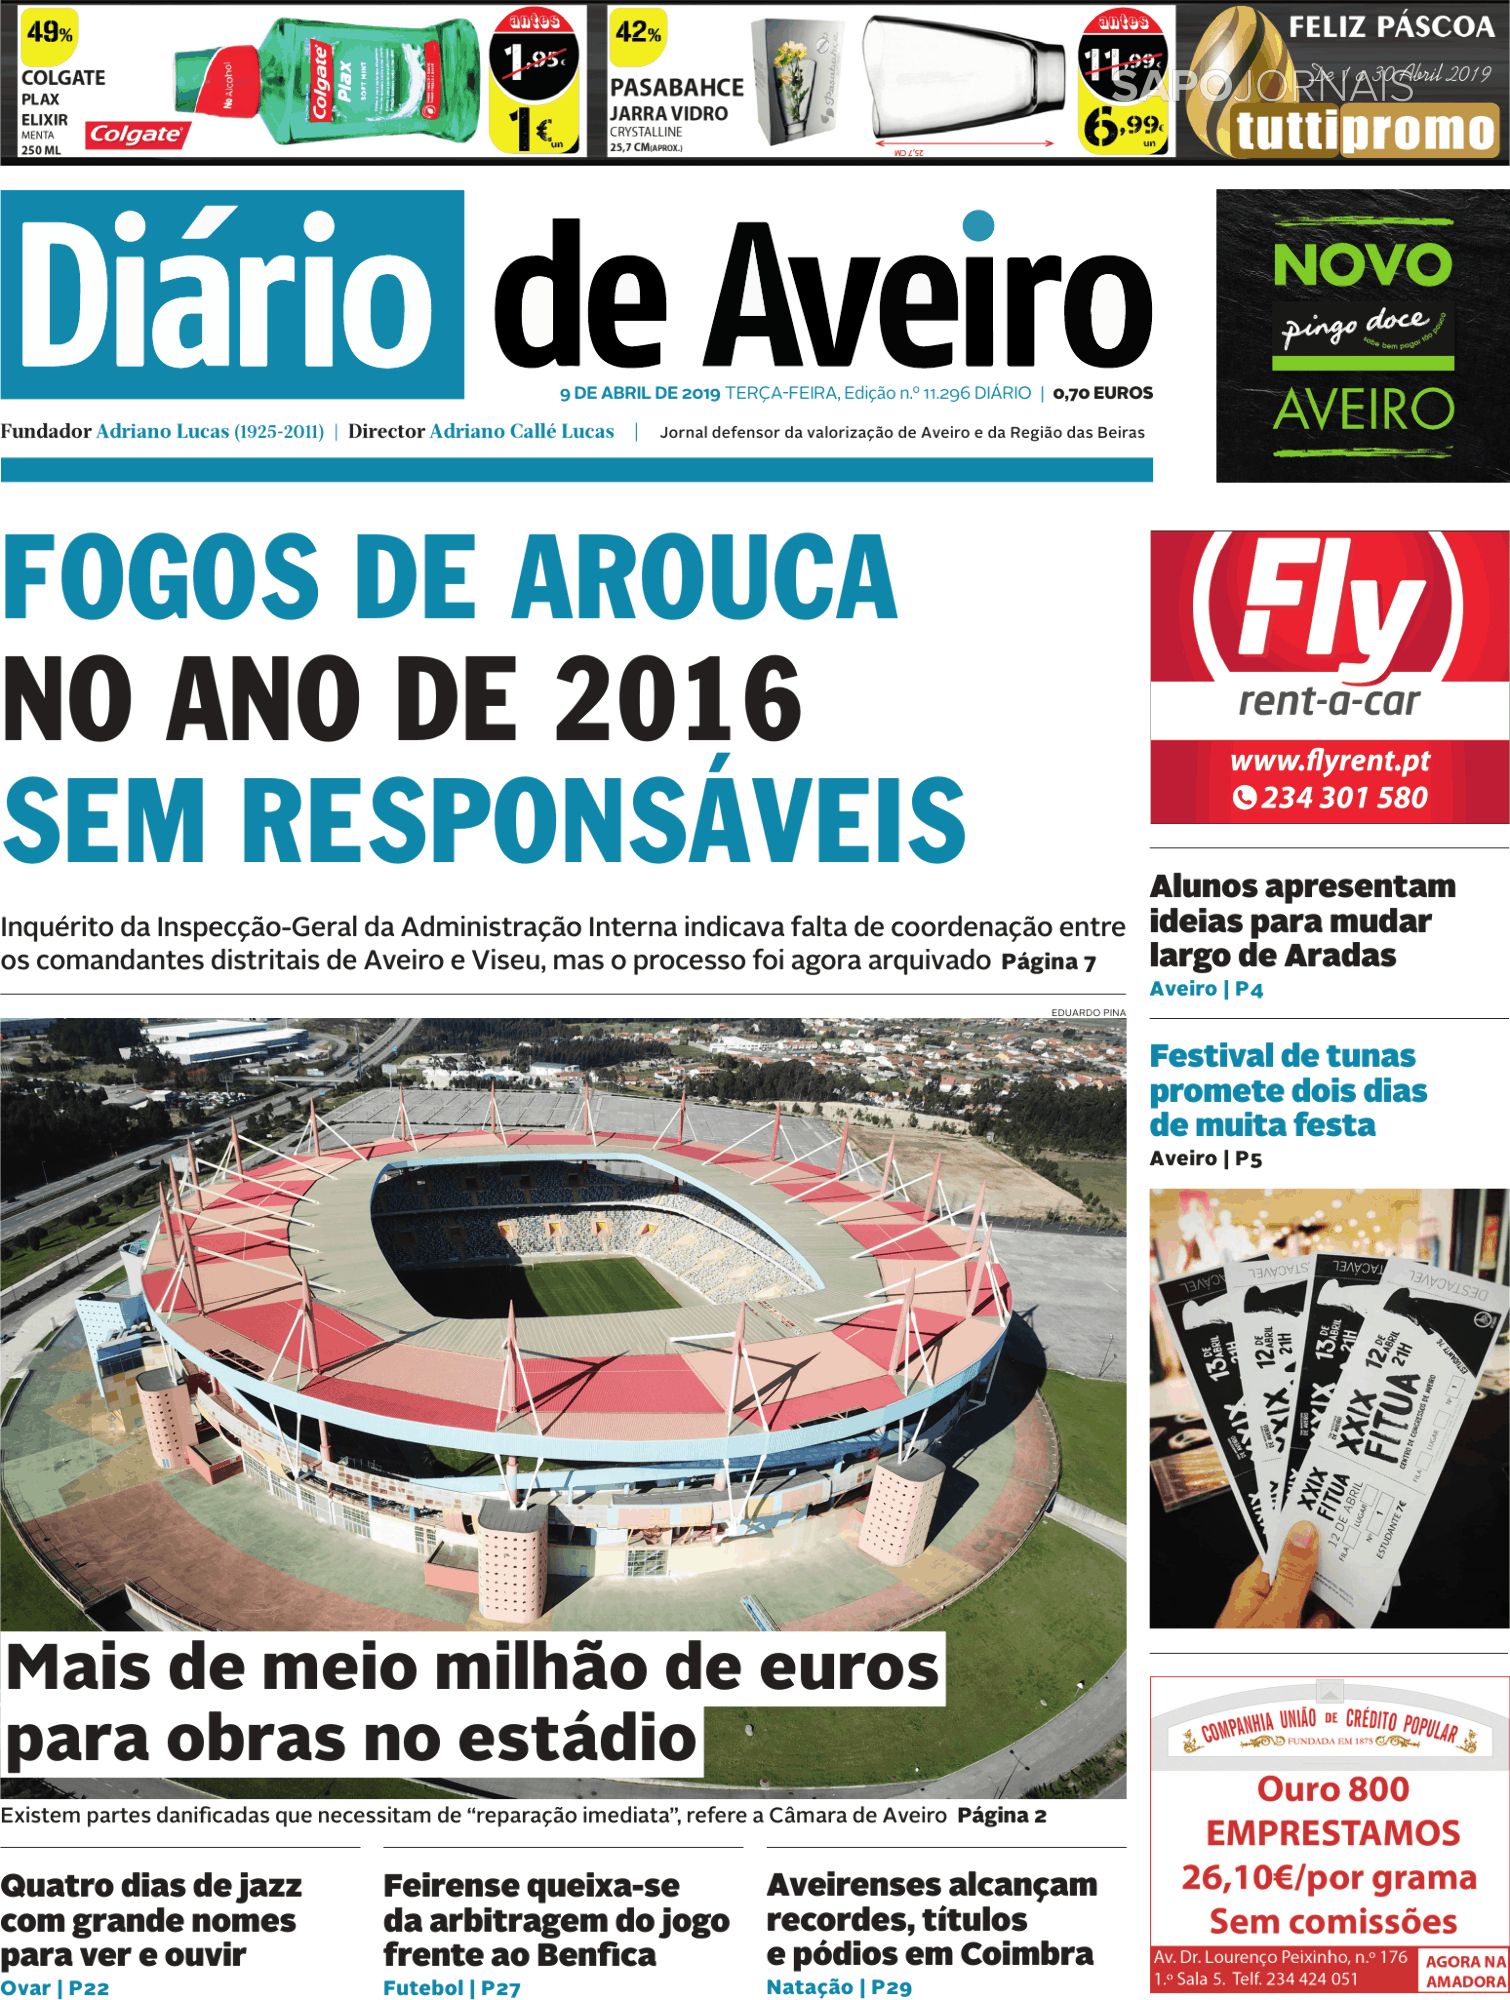 Diário de Aveiro (9 abr 2019) - Jornais e Revistas - SAPO 24